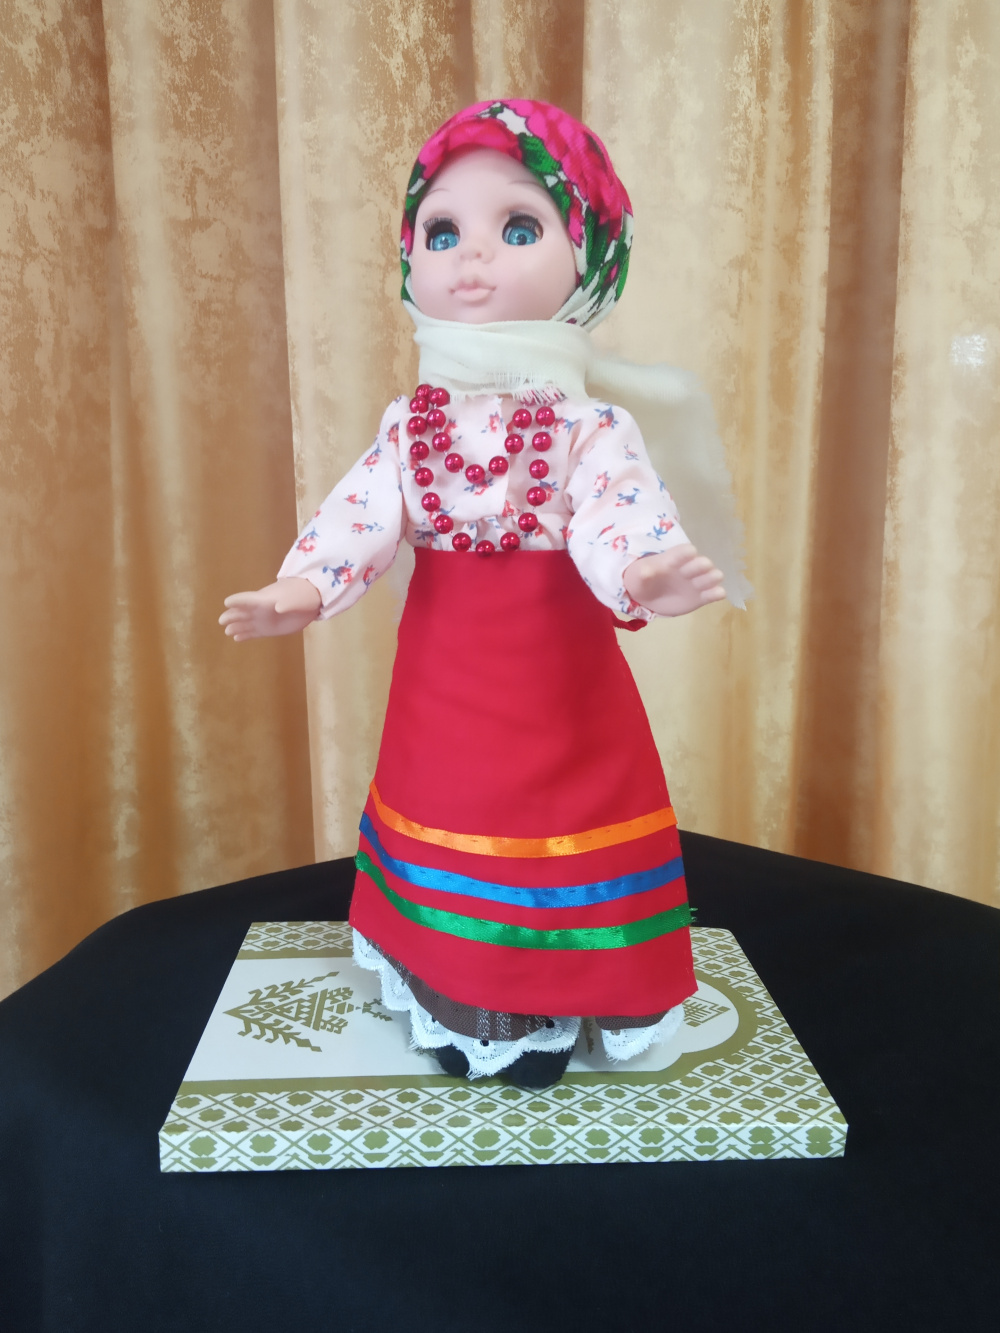 Подведены итоги районного конкурса " Народный костюм для куклы"